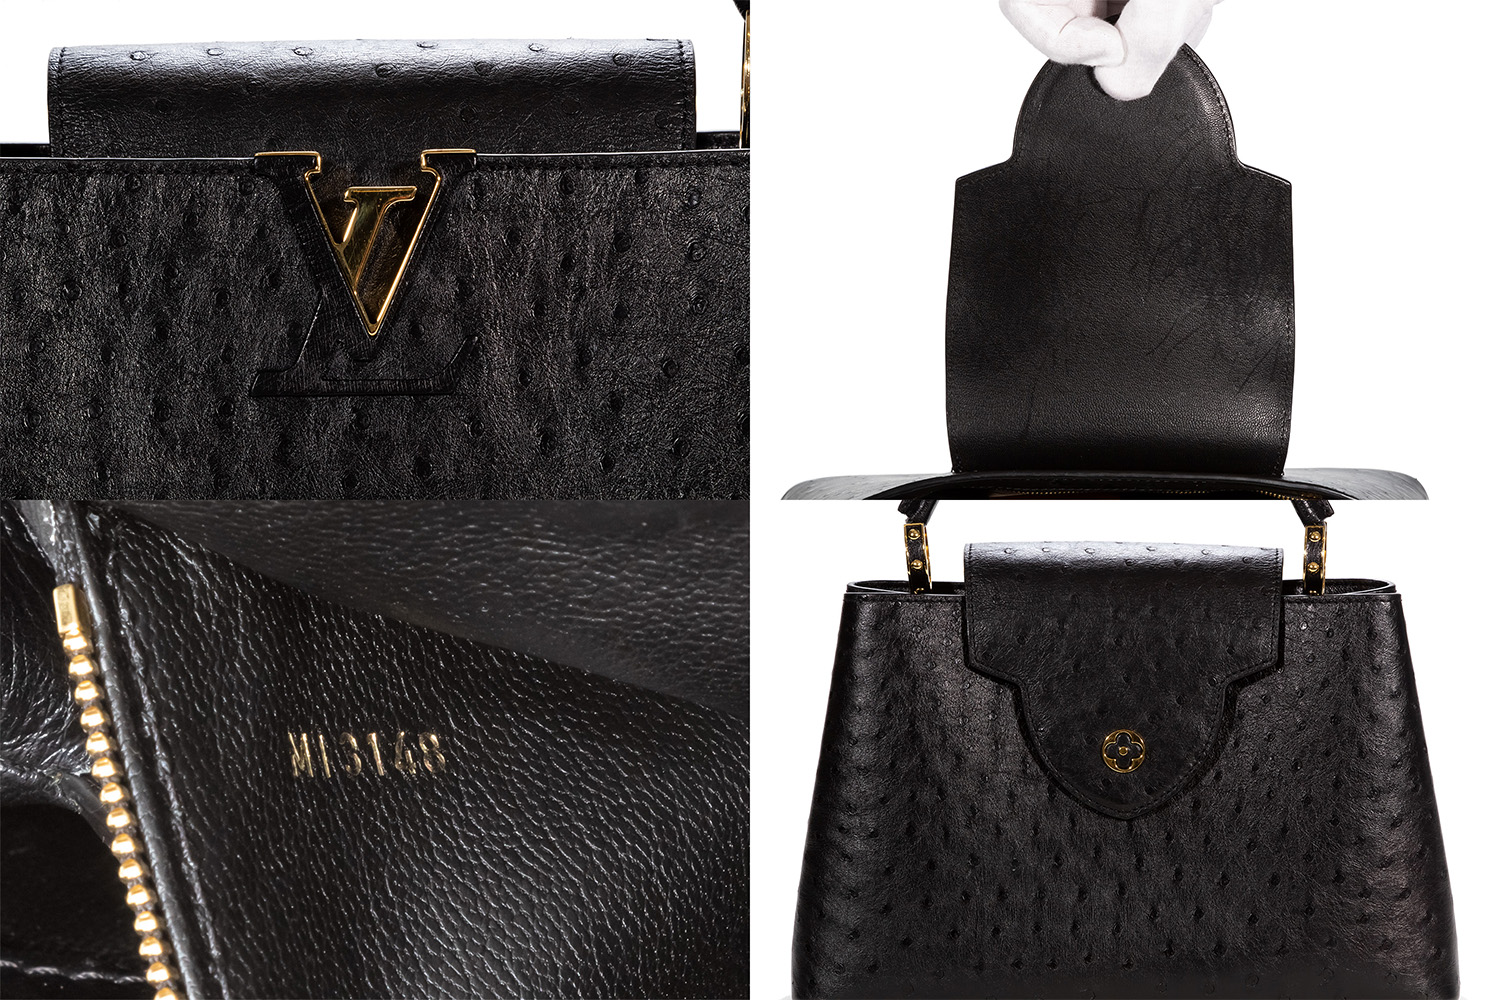 Louis Vuitton Capucines Bb Metallic Grey Top Handle Handbag, Women's, Size: One size, Gray